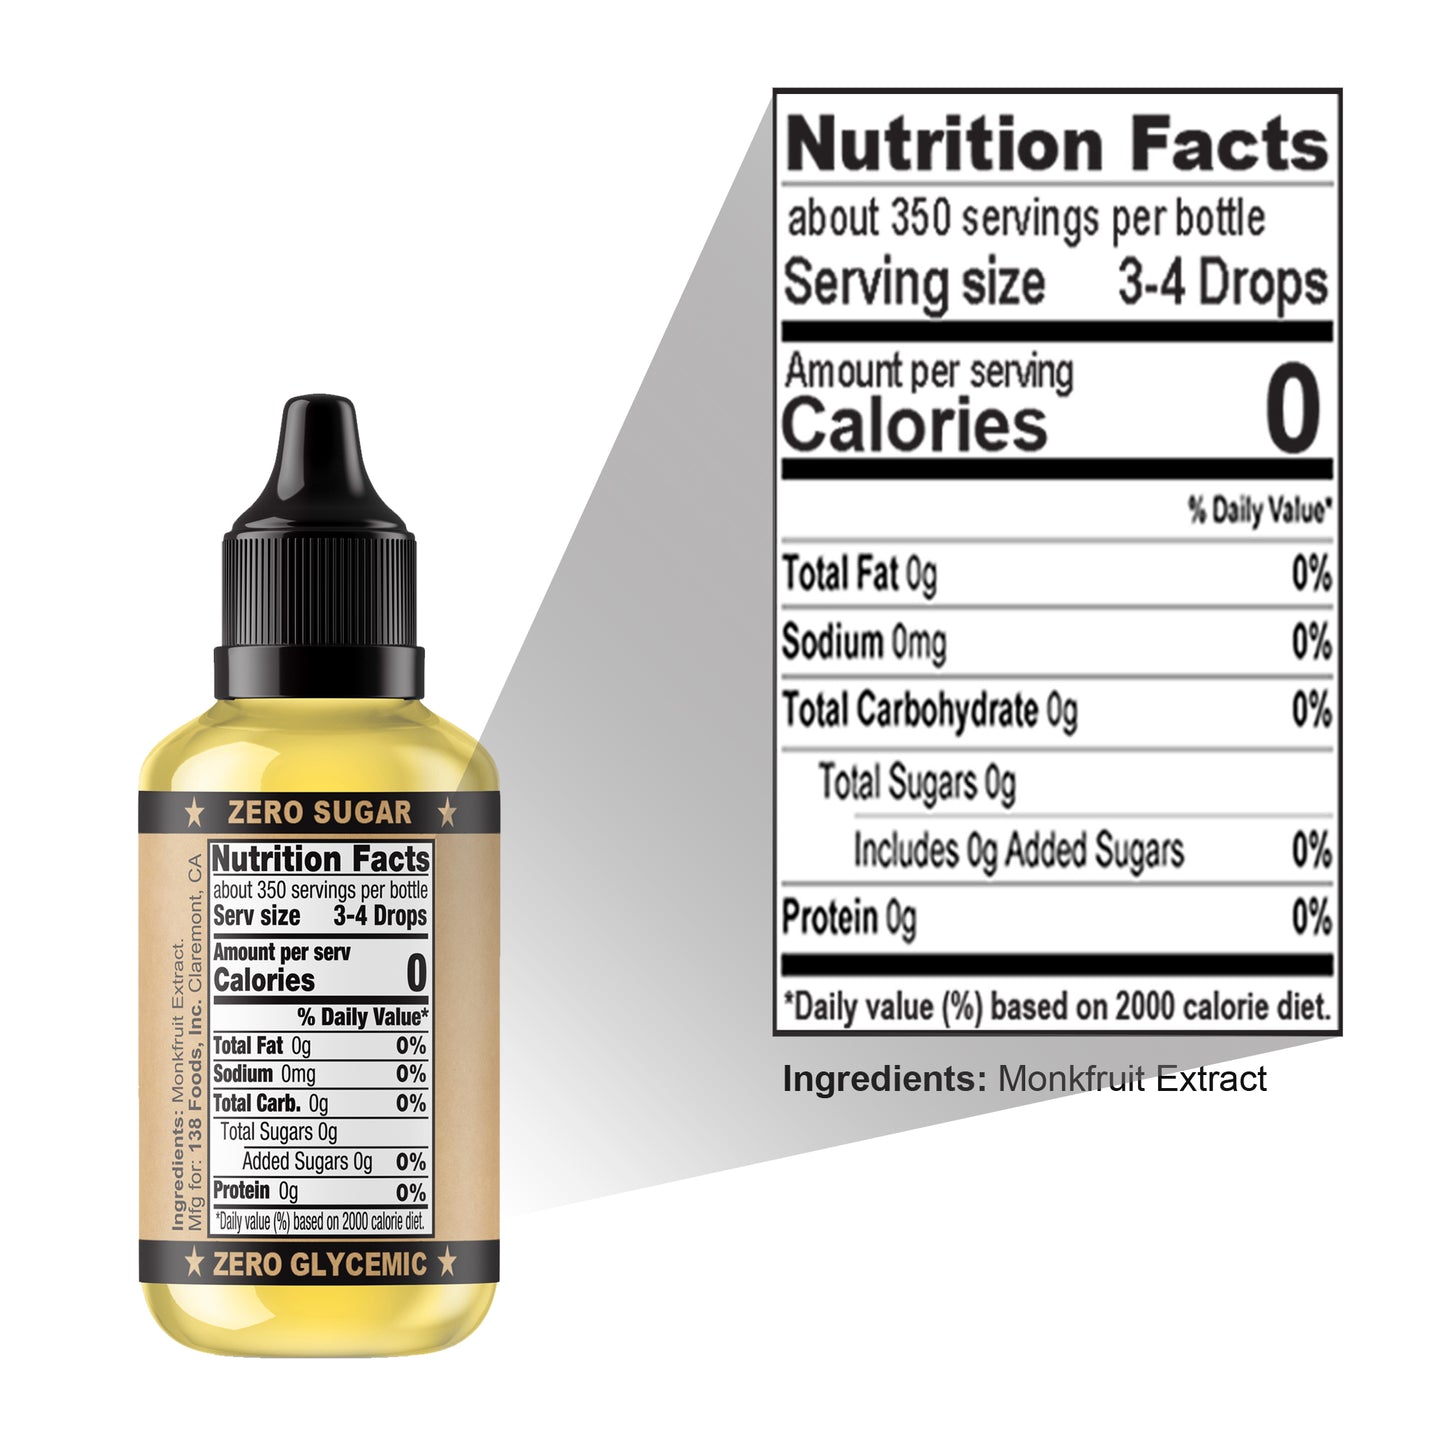 Monk Drops (Liquid Monkfruit Extract) - 138 Foods, Inc